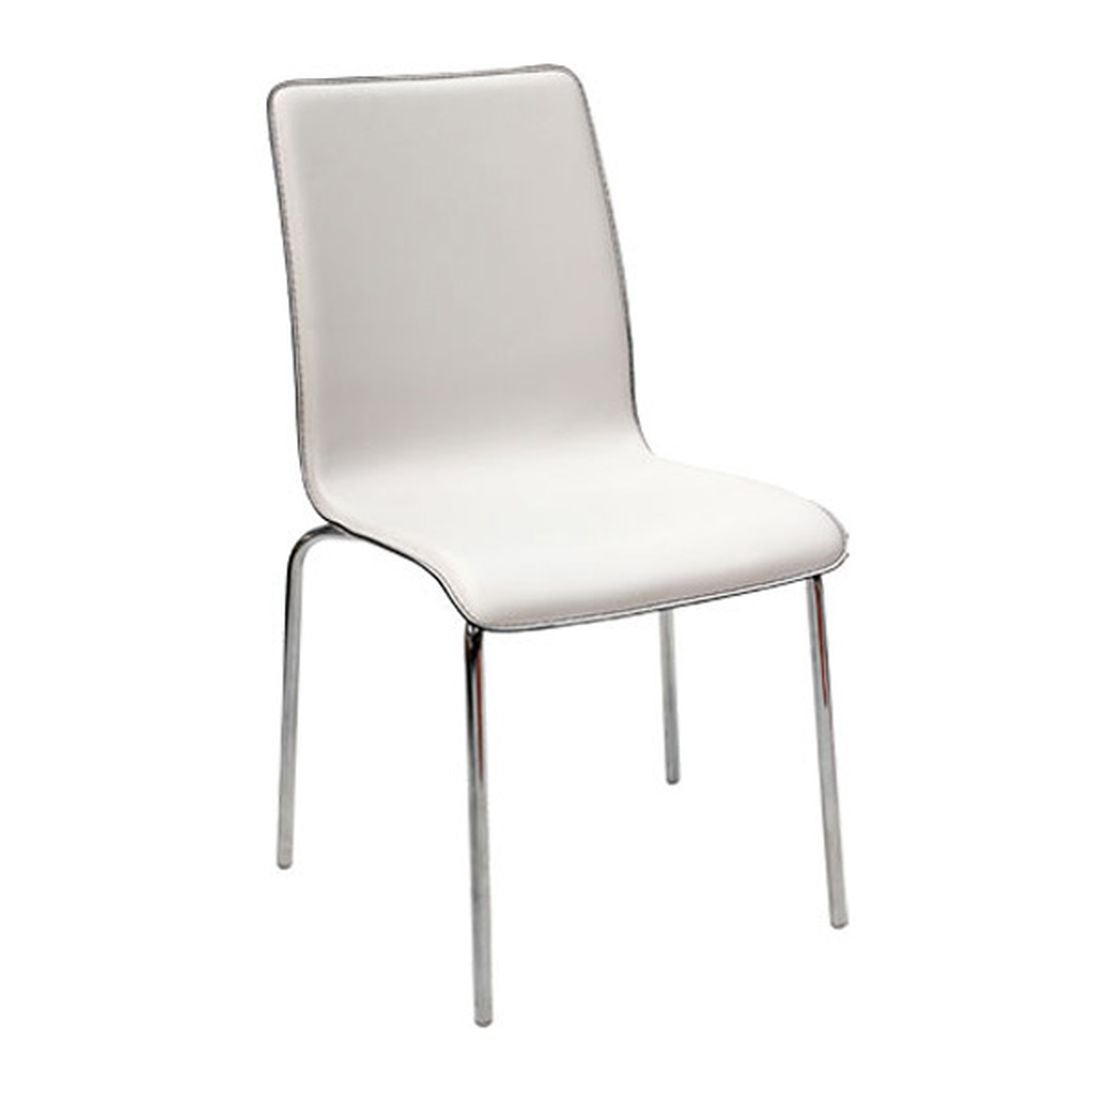 เก้าอี้ทานอาหาร เก้าอี้เหล็กเบาะหนัง รุ่น Hamish-SB Design Square